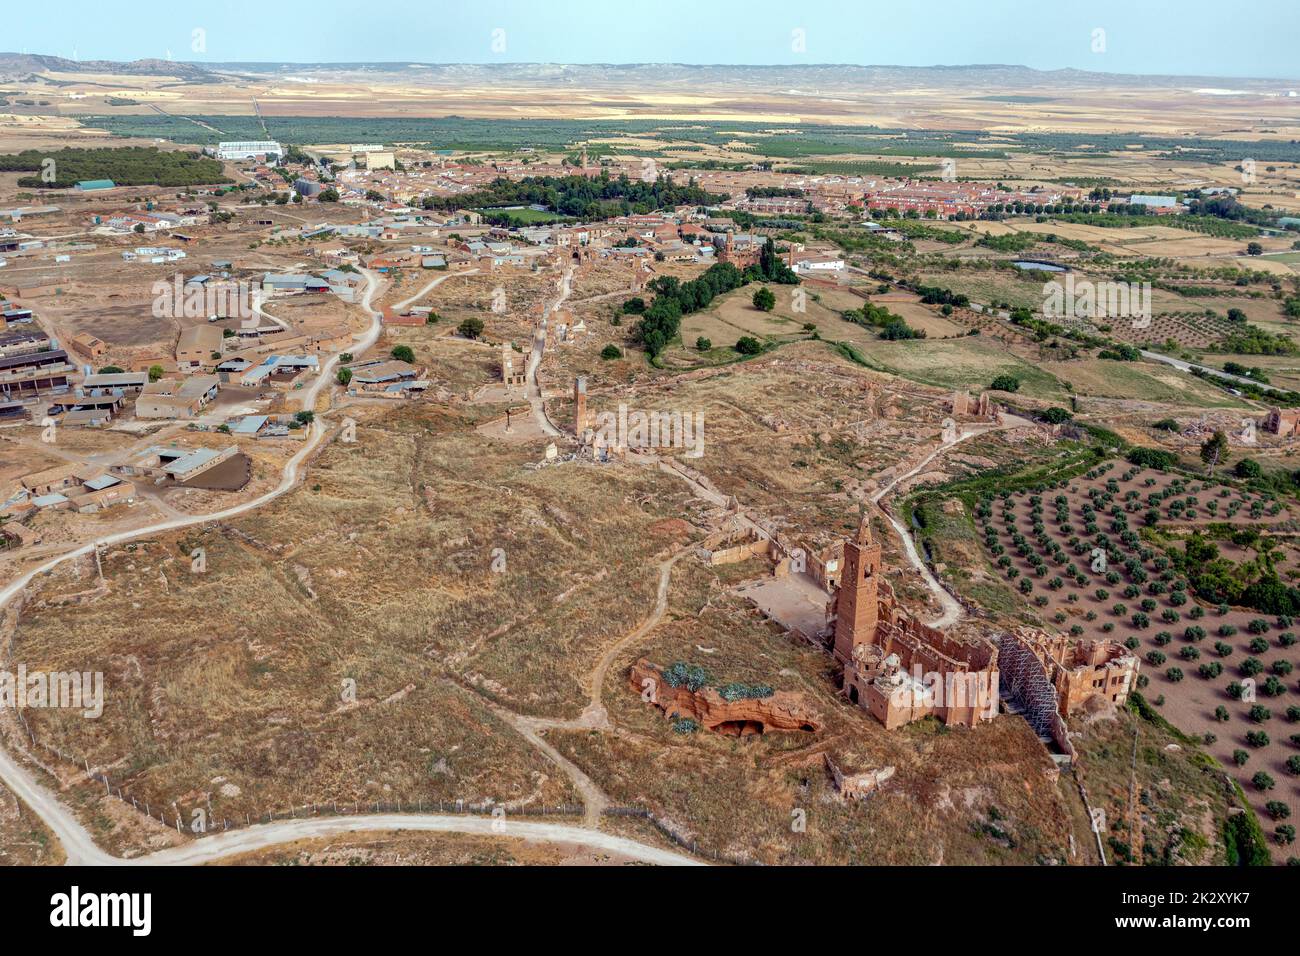 Ein Blick auf die Überreste der Altstadt von Belchite, Spanien, die während des spanischen Bürgerkriegs zerstört und von da an verlassen wurde, mit Blick auf die Kirche San Martin de Tours, Panoramablick Stockfoto